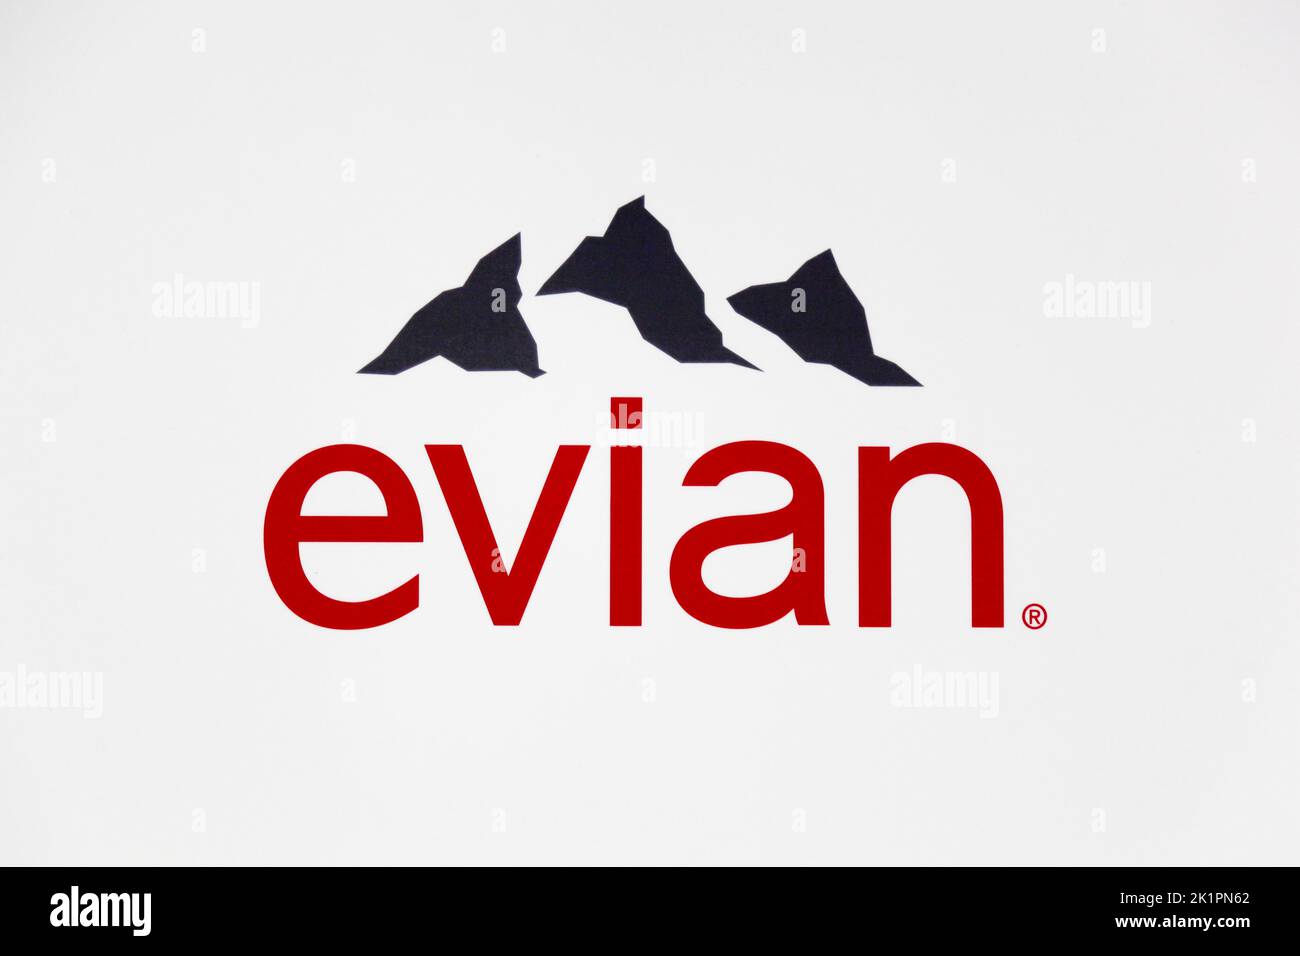 Francfort, Allemagne - 30 juillet 2017 : Evian est une société française qui enbouteille et commercialise des eaux minérales provenant de plusieurs sources près d'Evian-les-bains Banque D'Images